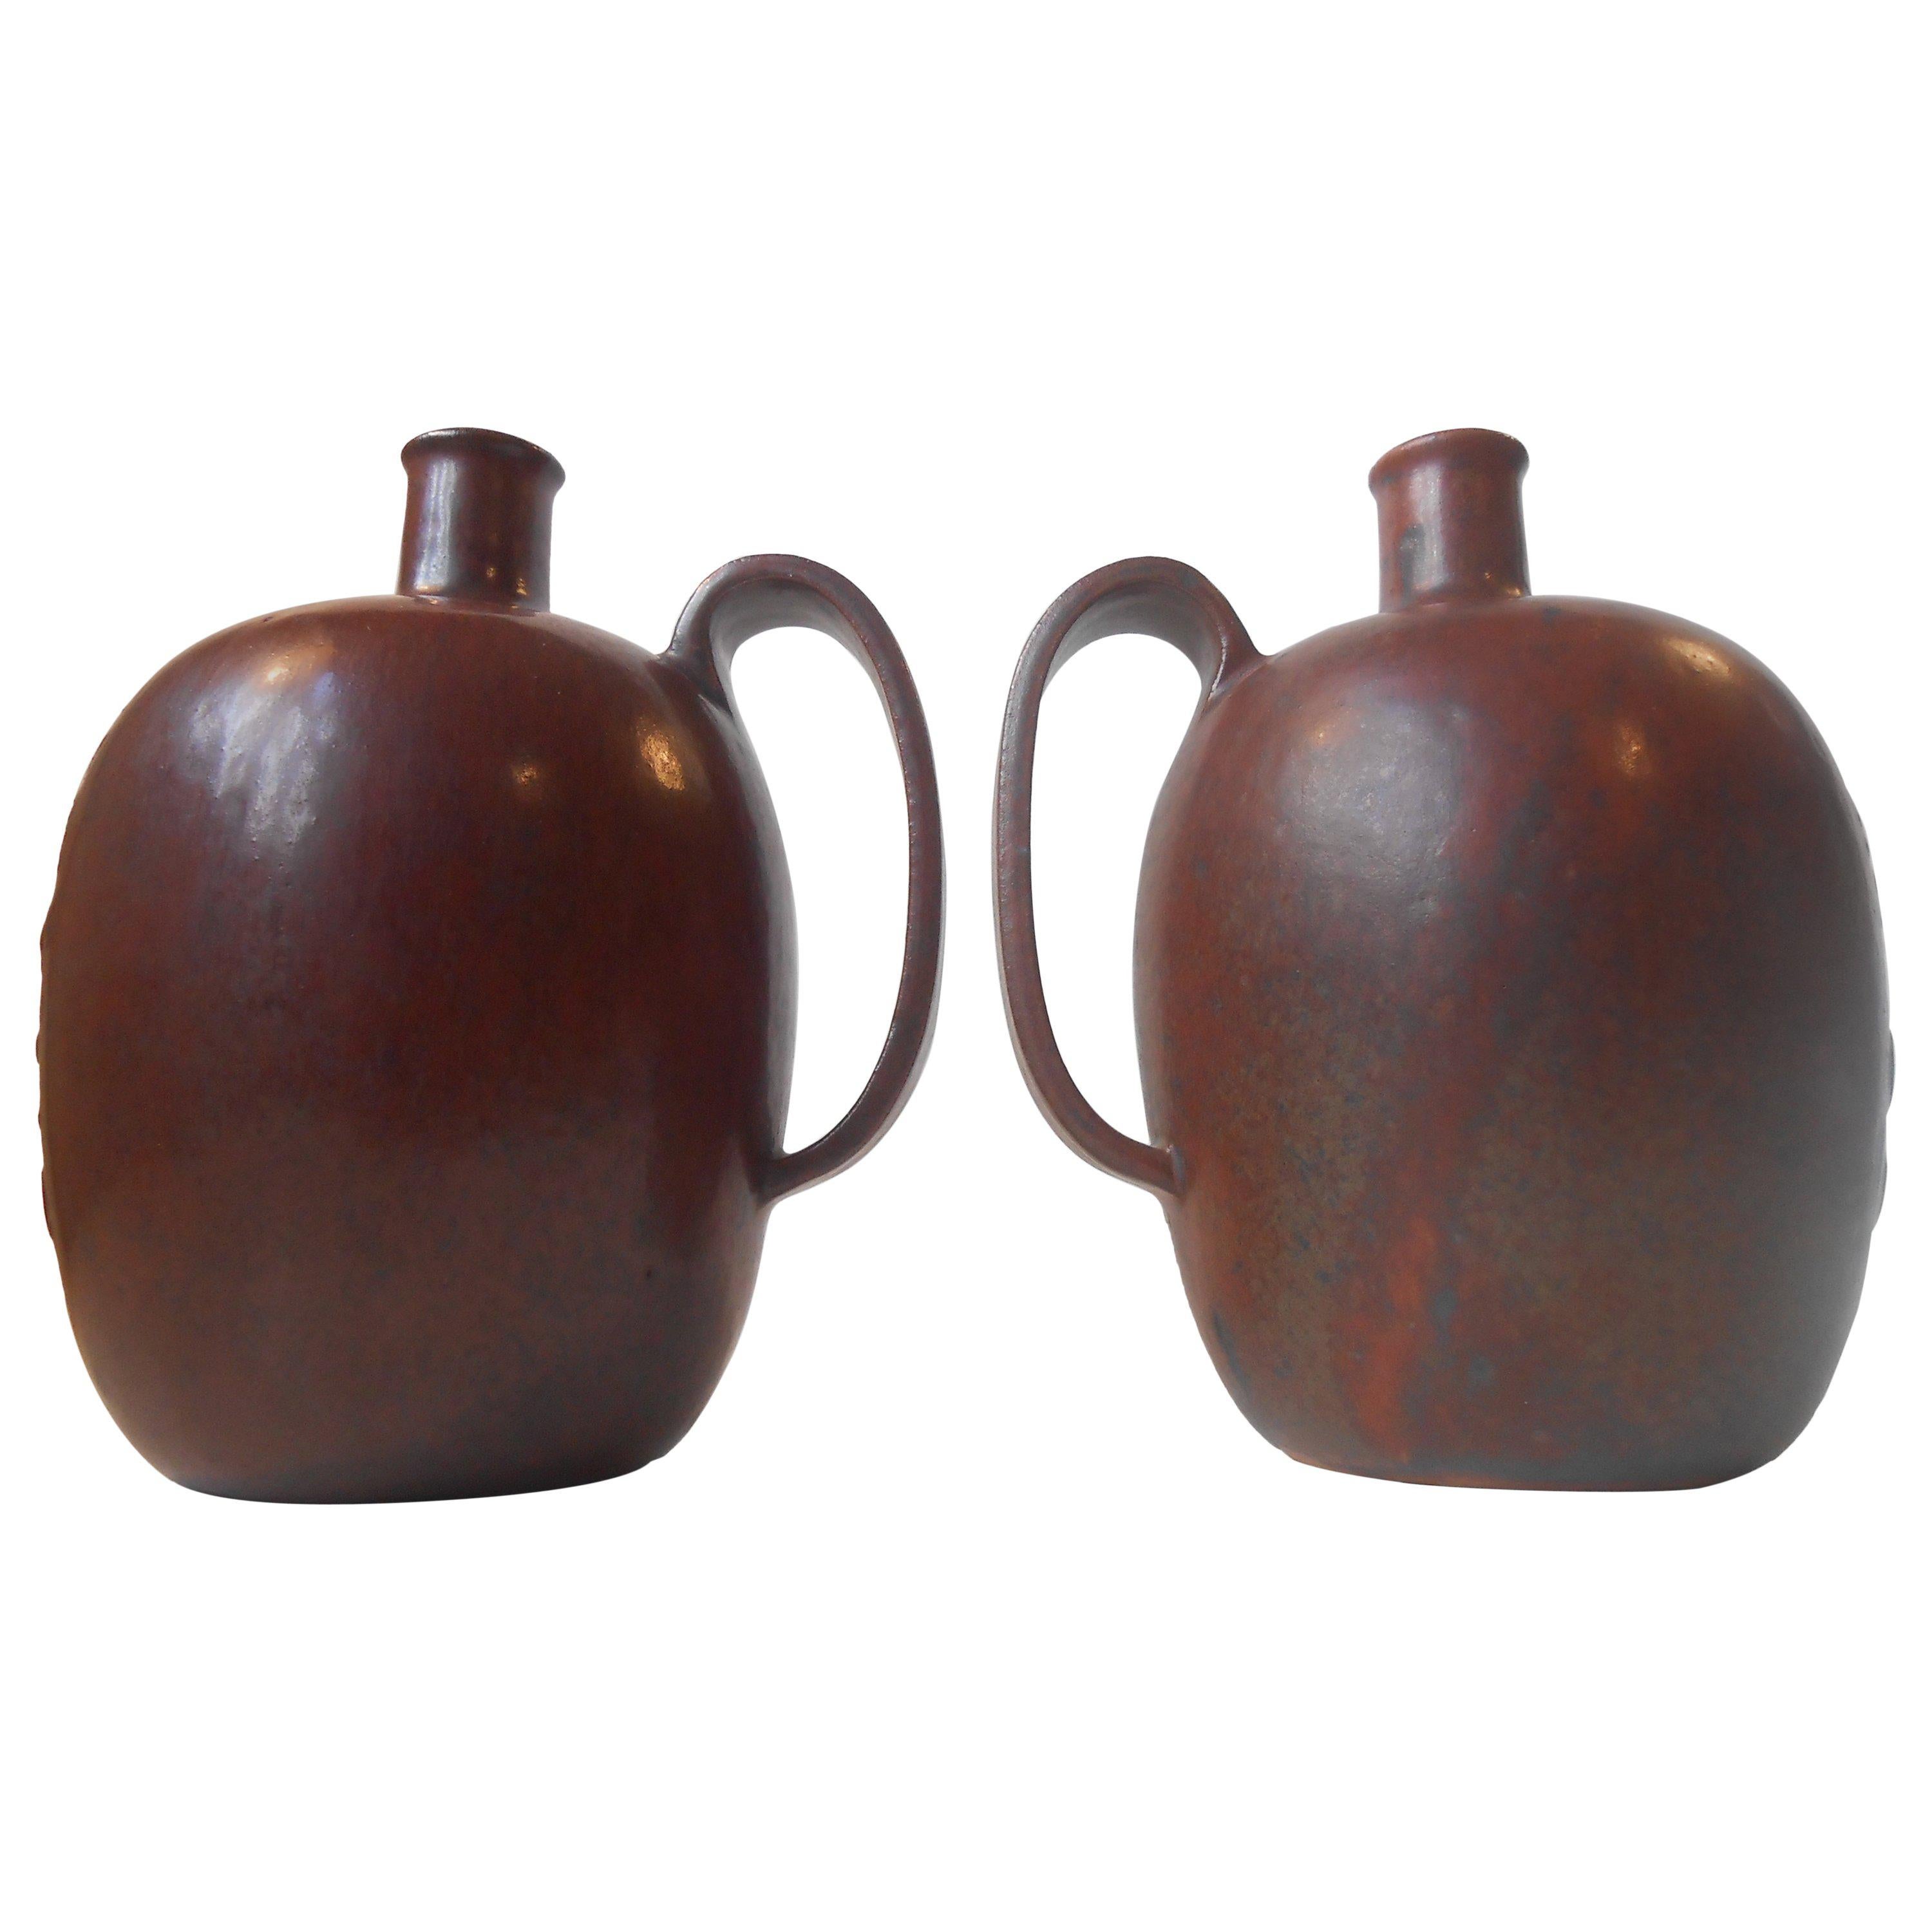 Ein Paar organisch geformter, zusammenpassender Arne Bang Cloc. Schokolade Schnapsflaschen / Vasen mit reichen roten gesungenen Glasuren. Beide in neuwertigem Zustand. Maße: Höhe 15 cm (6 Zoll), Durchmesser ca. 10-11 cm (4 Zoll). Beide haben das